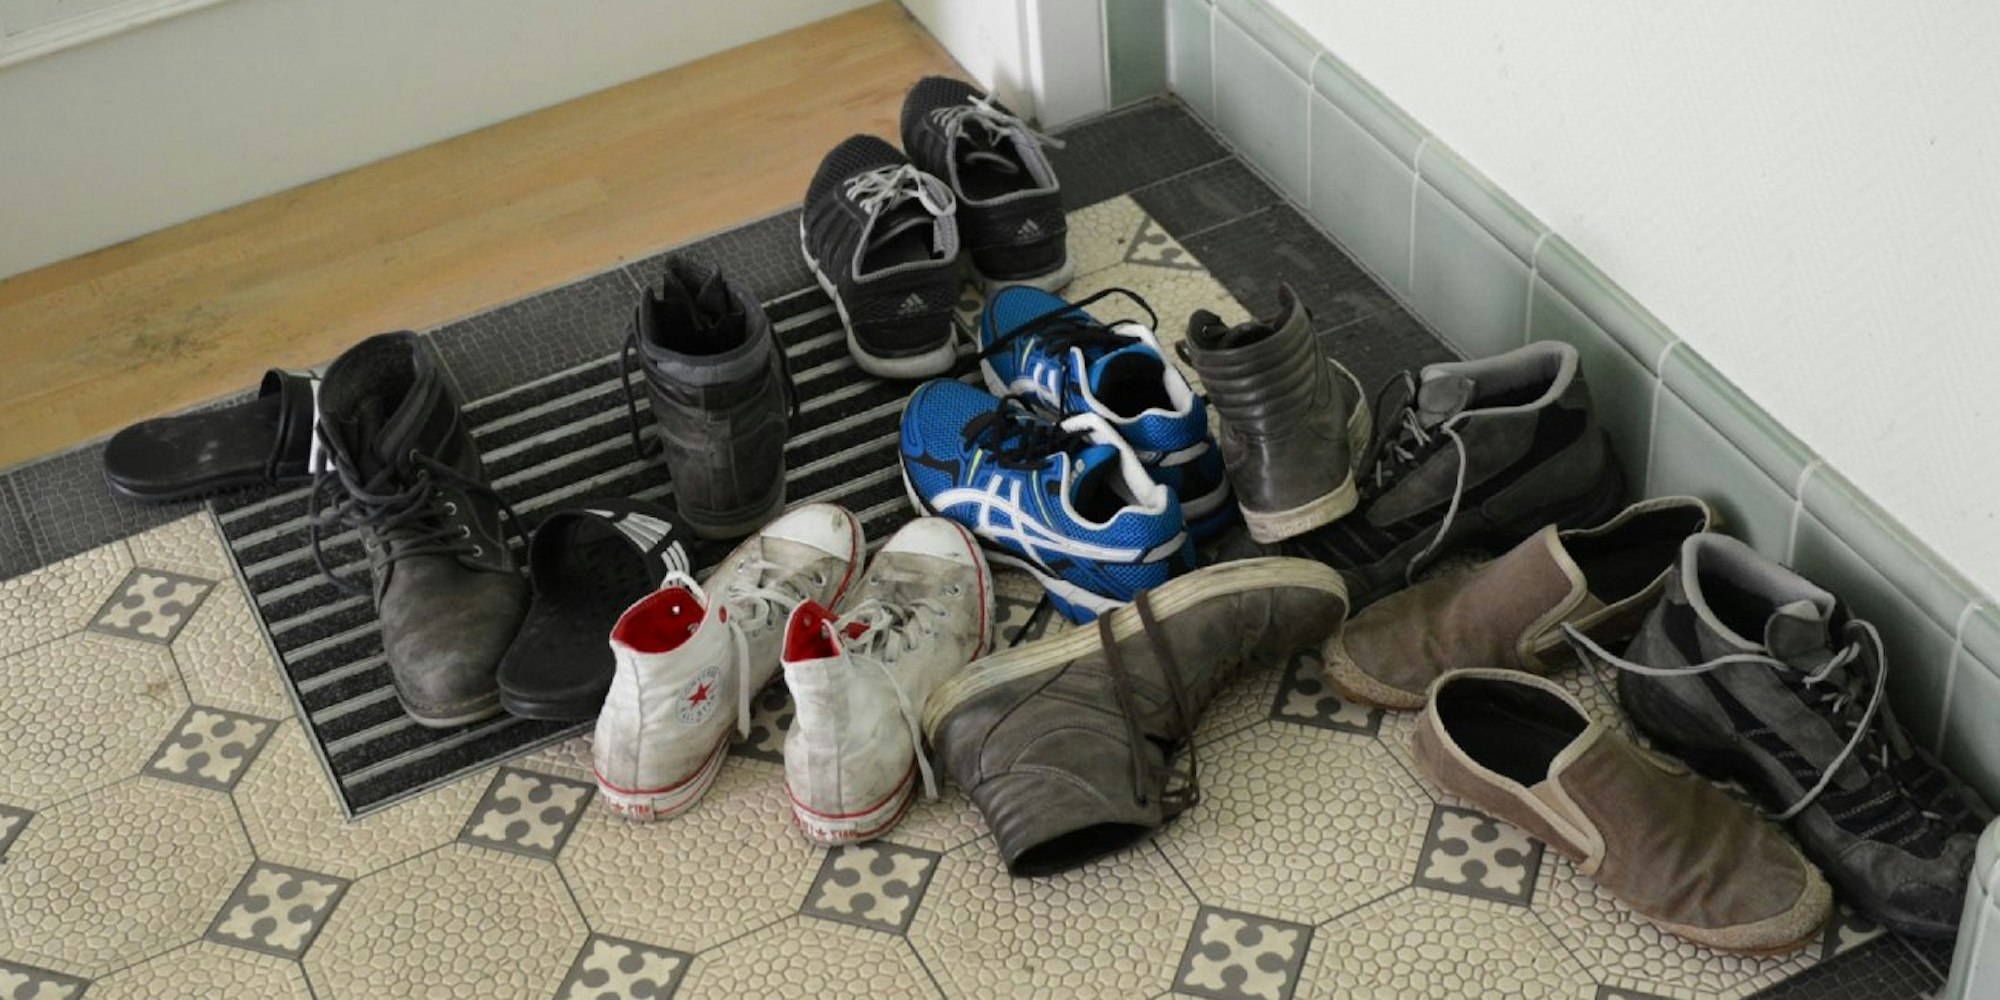 Dürfen Schuhe eigentlich vor der Wohnungstüre liegen?